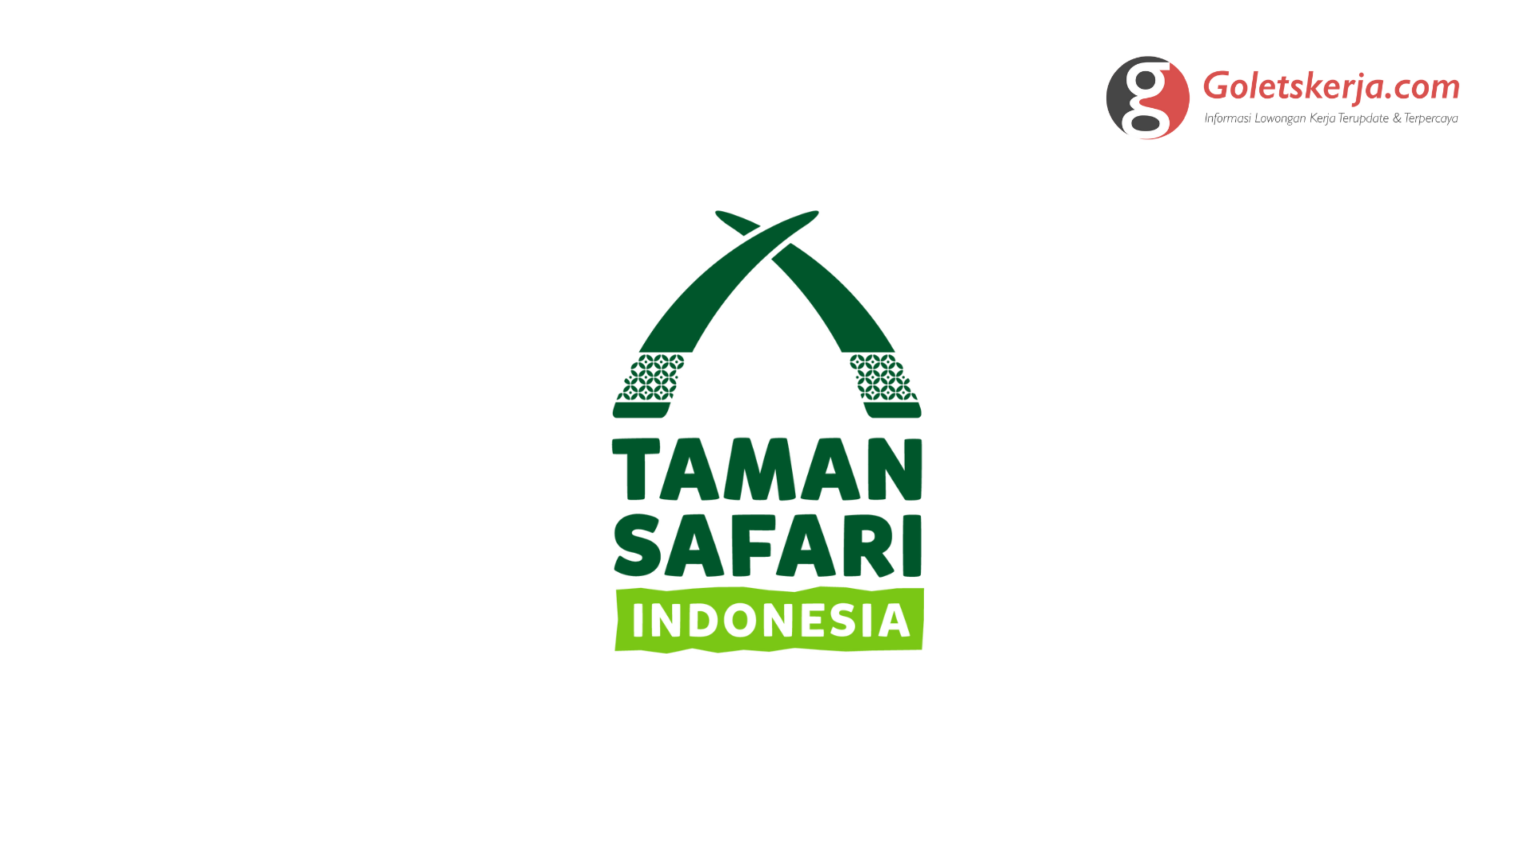 Lowongan Kerja PT Taman Safari Indonesia - Goletskerja.com